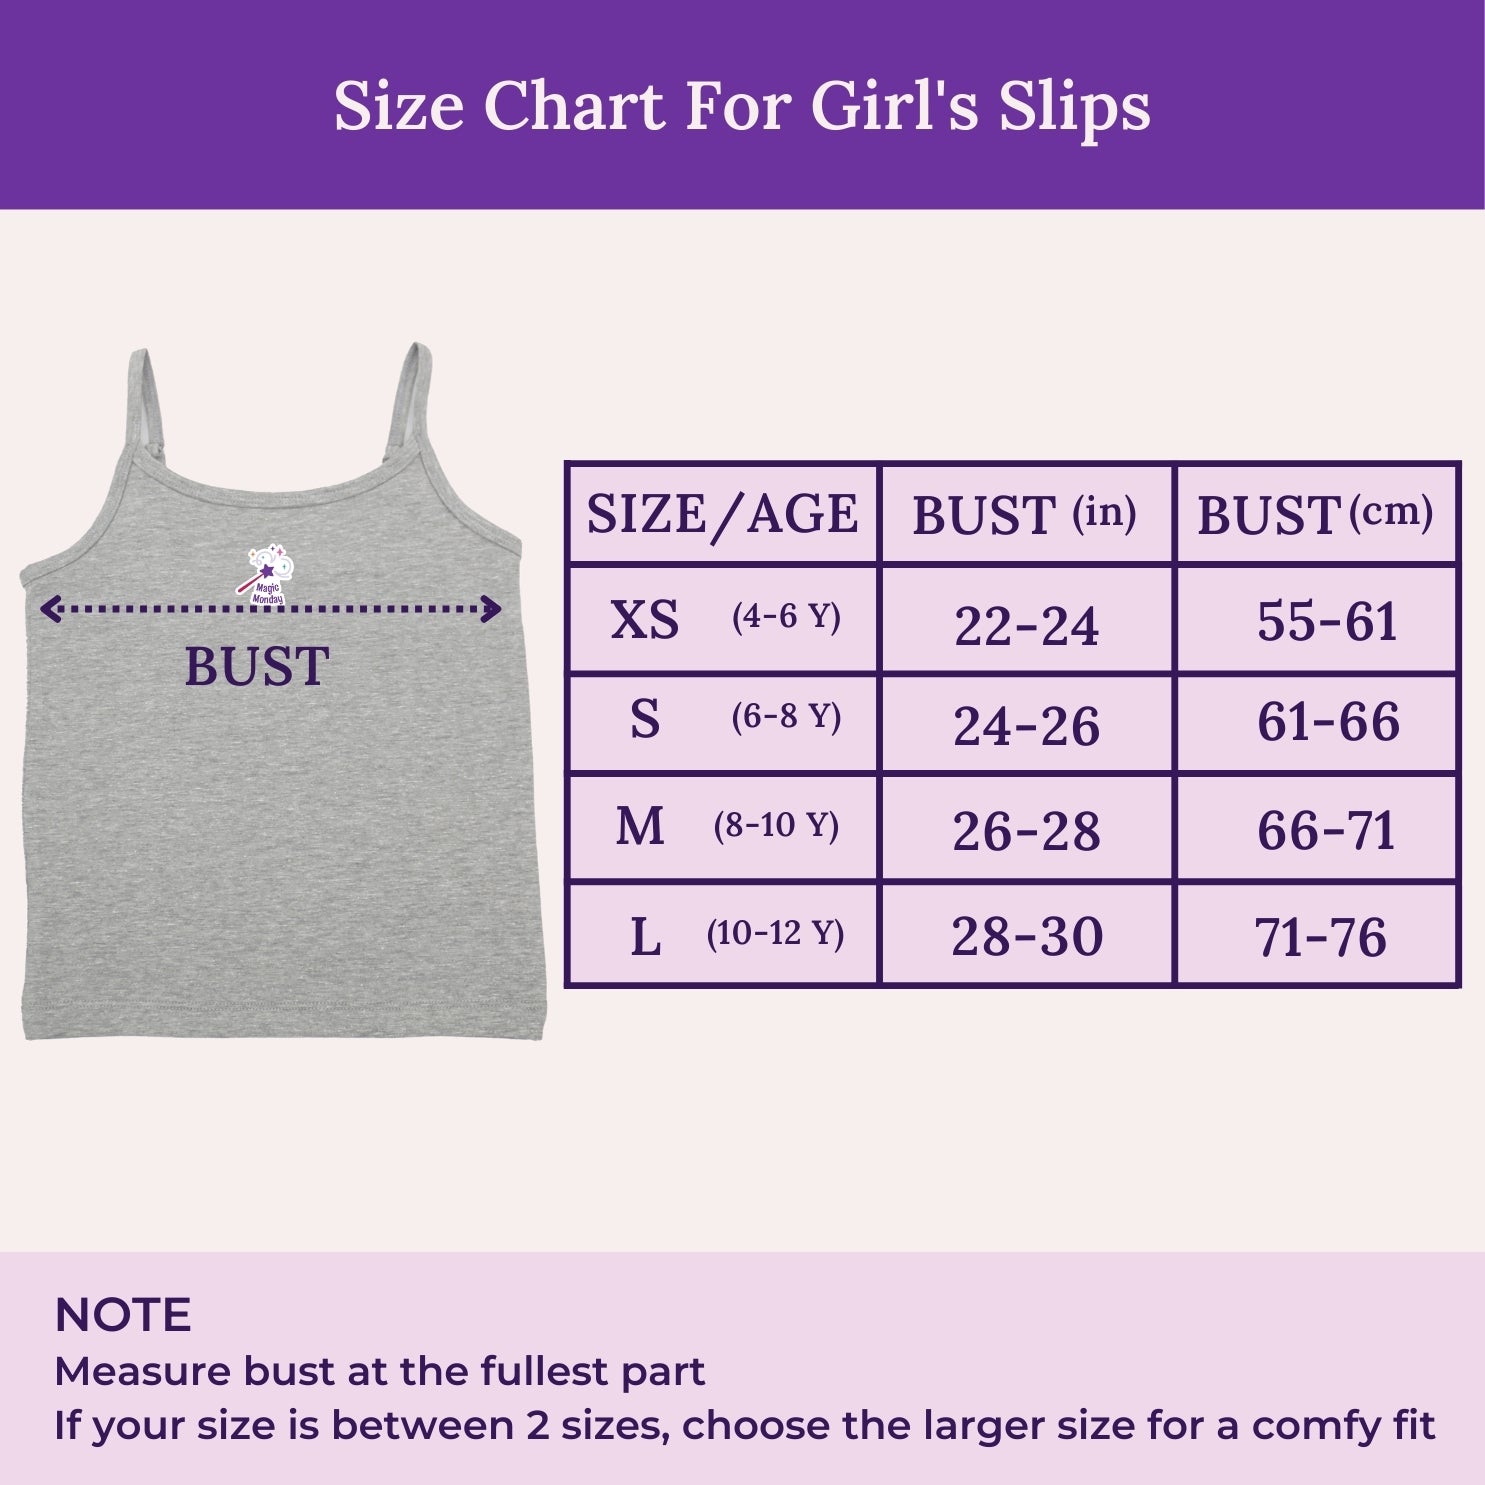 Size Chart For Girl's Slips